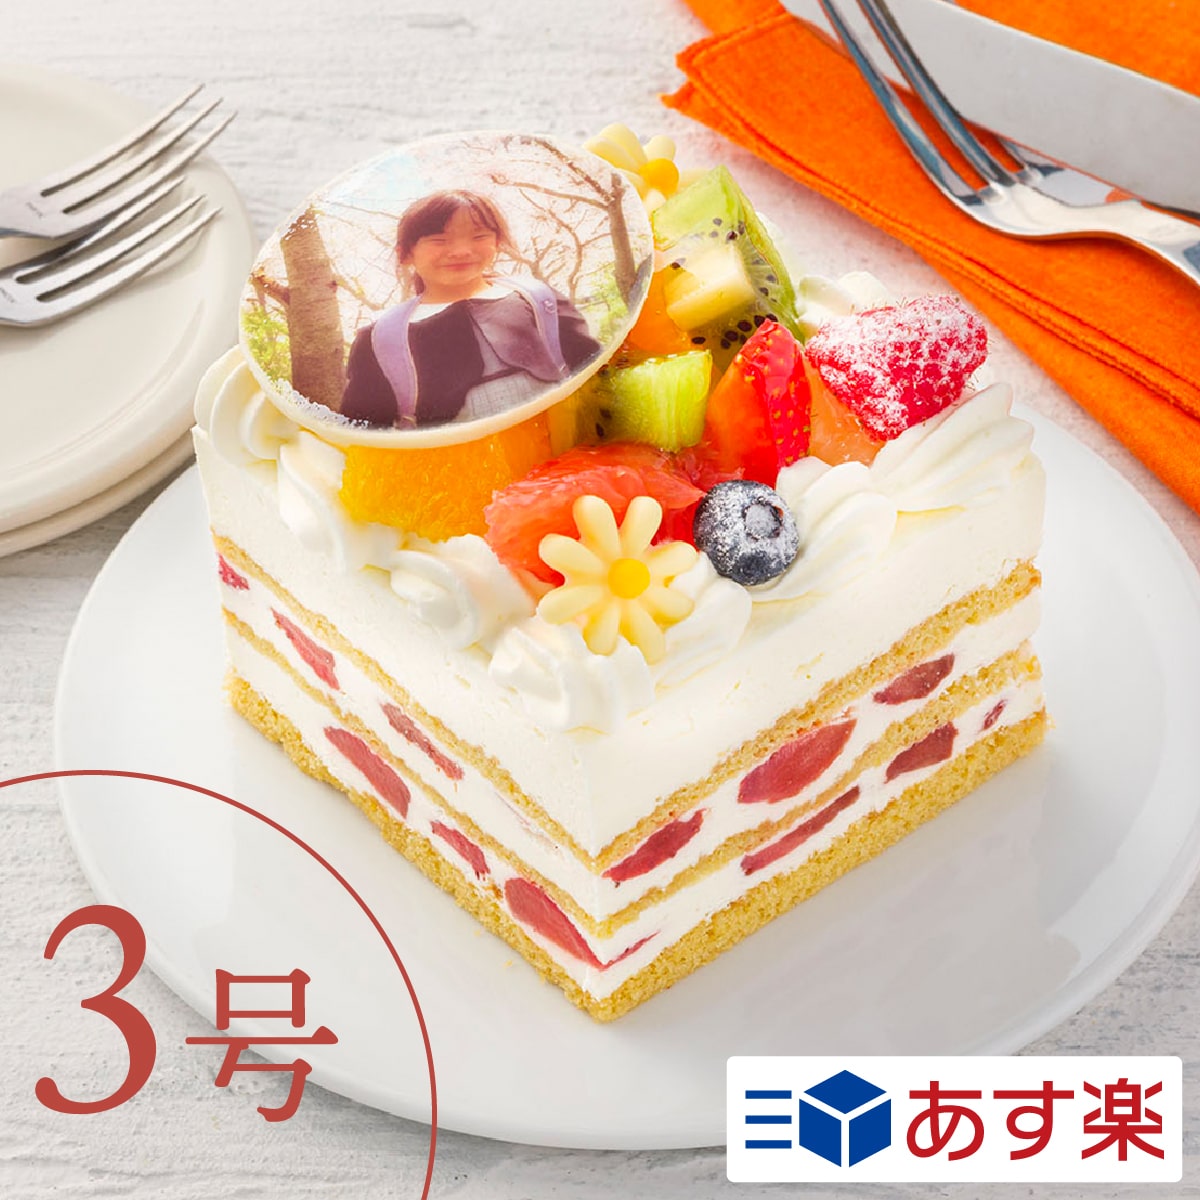 誤解させる 臭い 息子 ケーキ 3 号 Diningbar Shin Jp